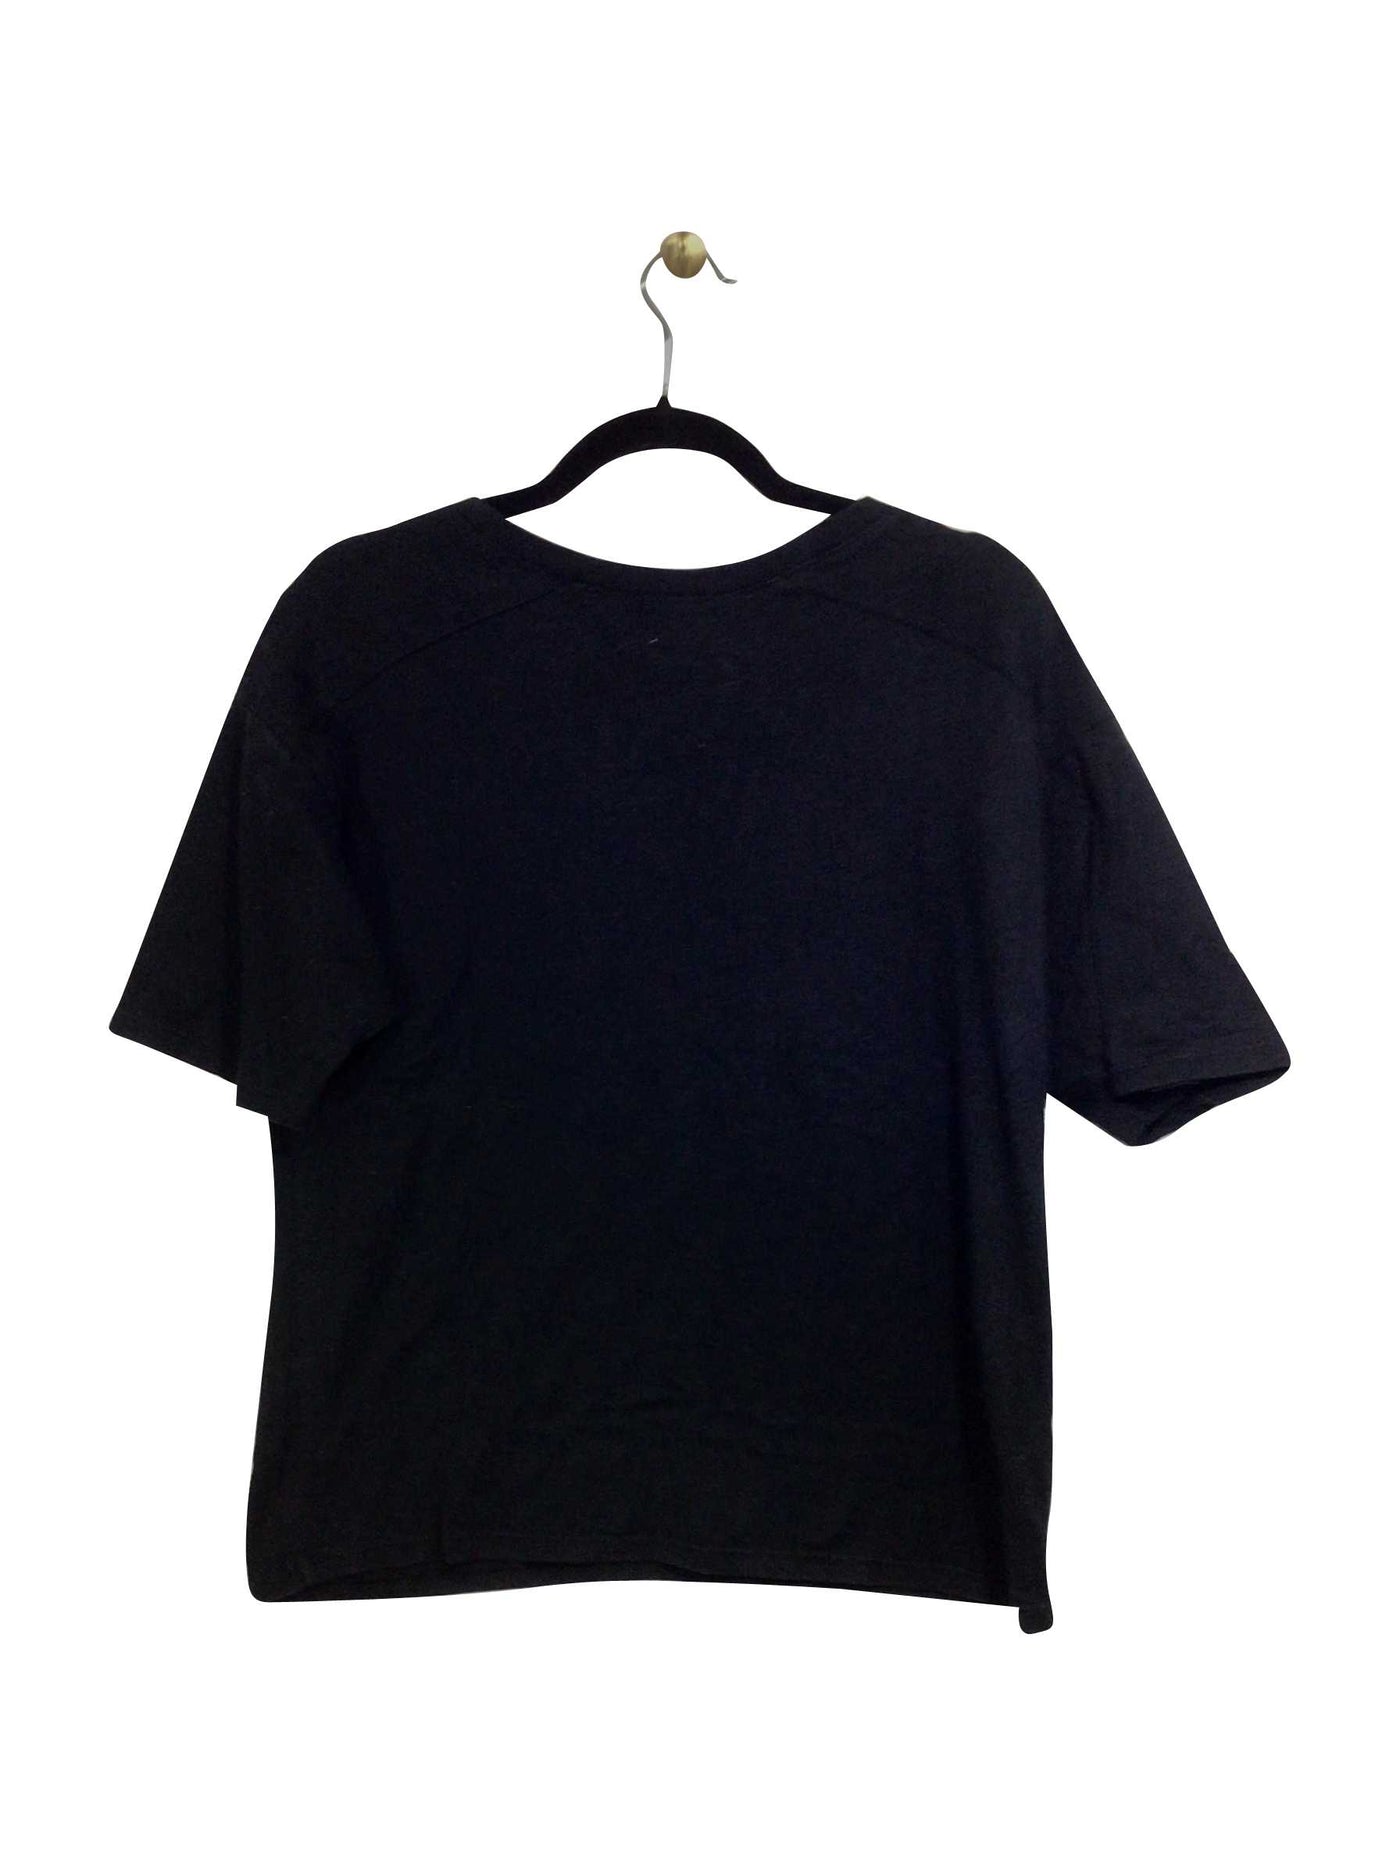 OLD NAVY Regular fit T-shirt in Black - Size S | 13.99 $ KOOP